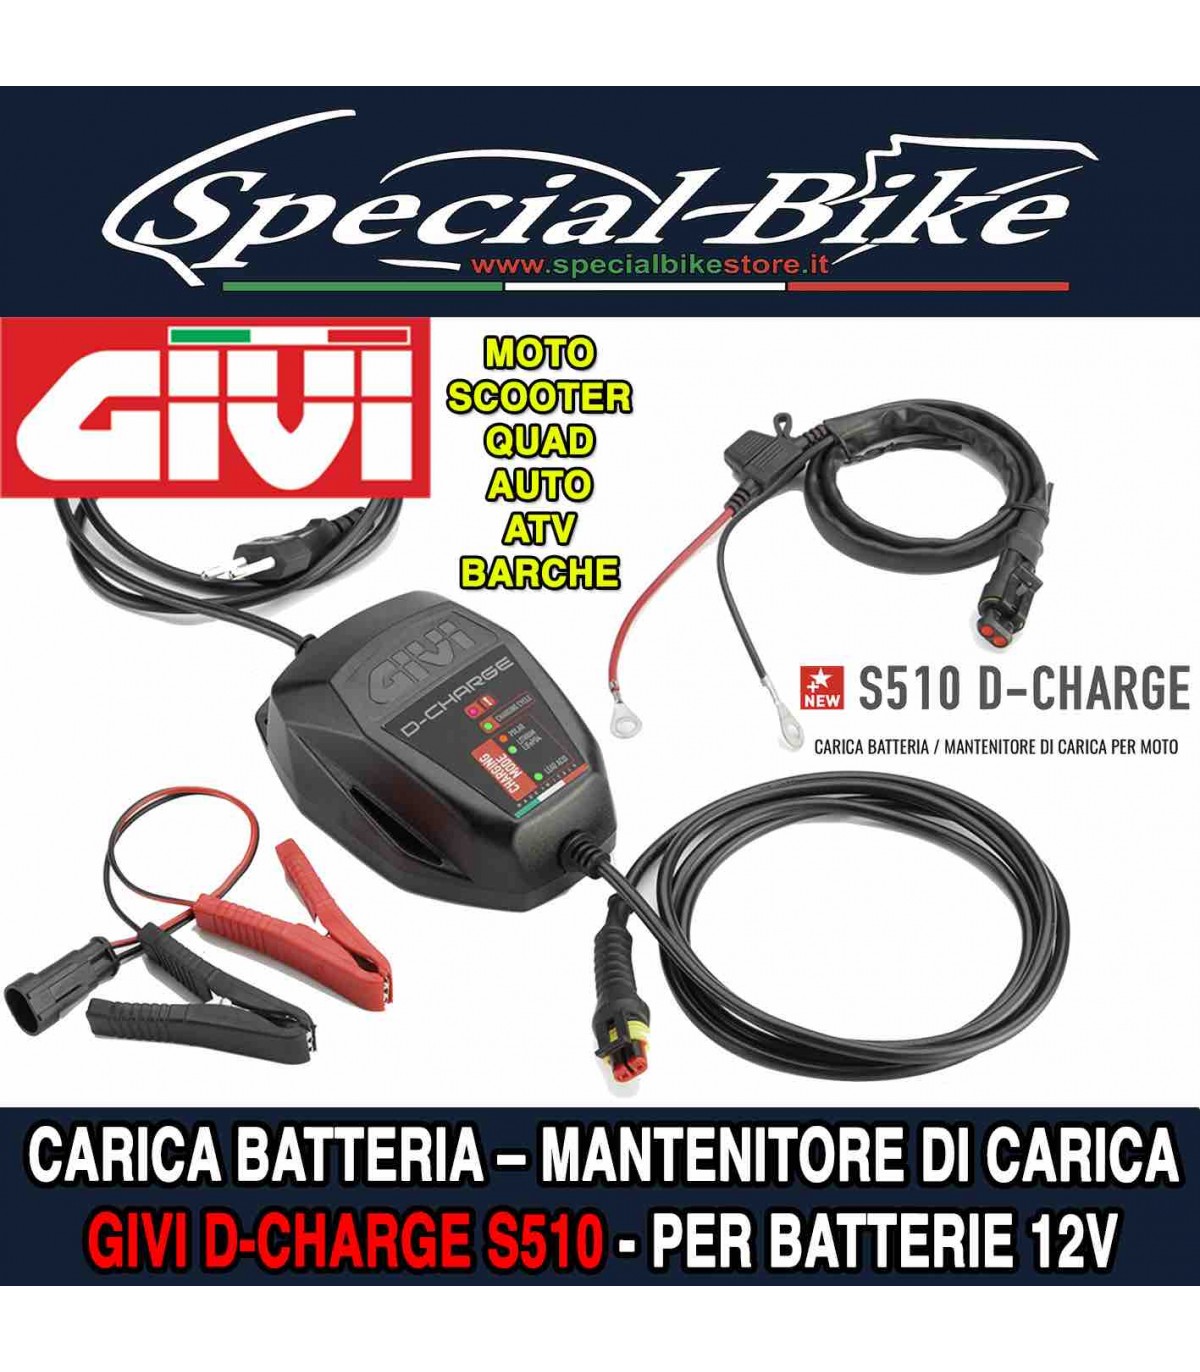 GIVI S510 D-CHARGE CARICA BATTERIA / MANTENITORE DI CARICA PER MOTO